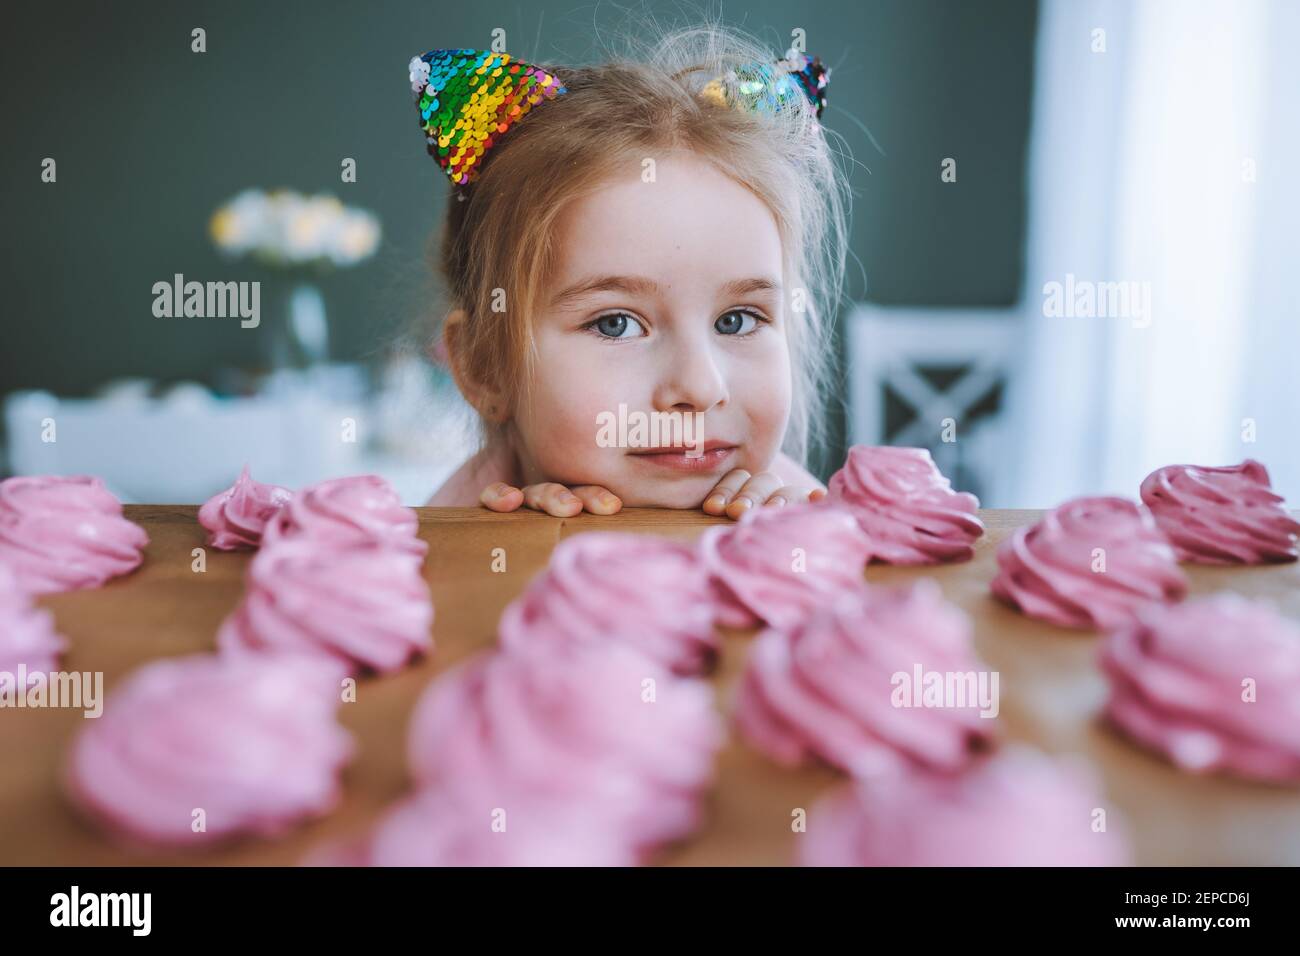 Bambina con i capelli biondi e gli occhi blu guardare su deliziosi marshmallow rosa fatto in casa ot zephyr sul tavolo in cucina. Foto Stock